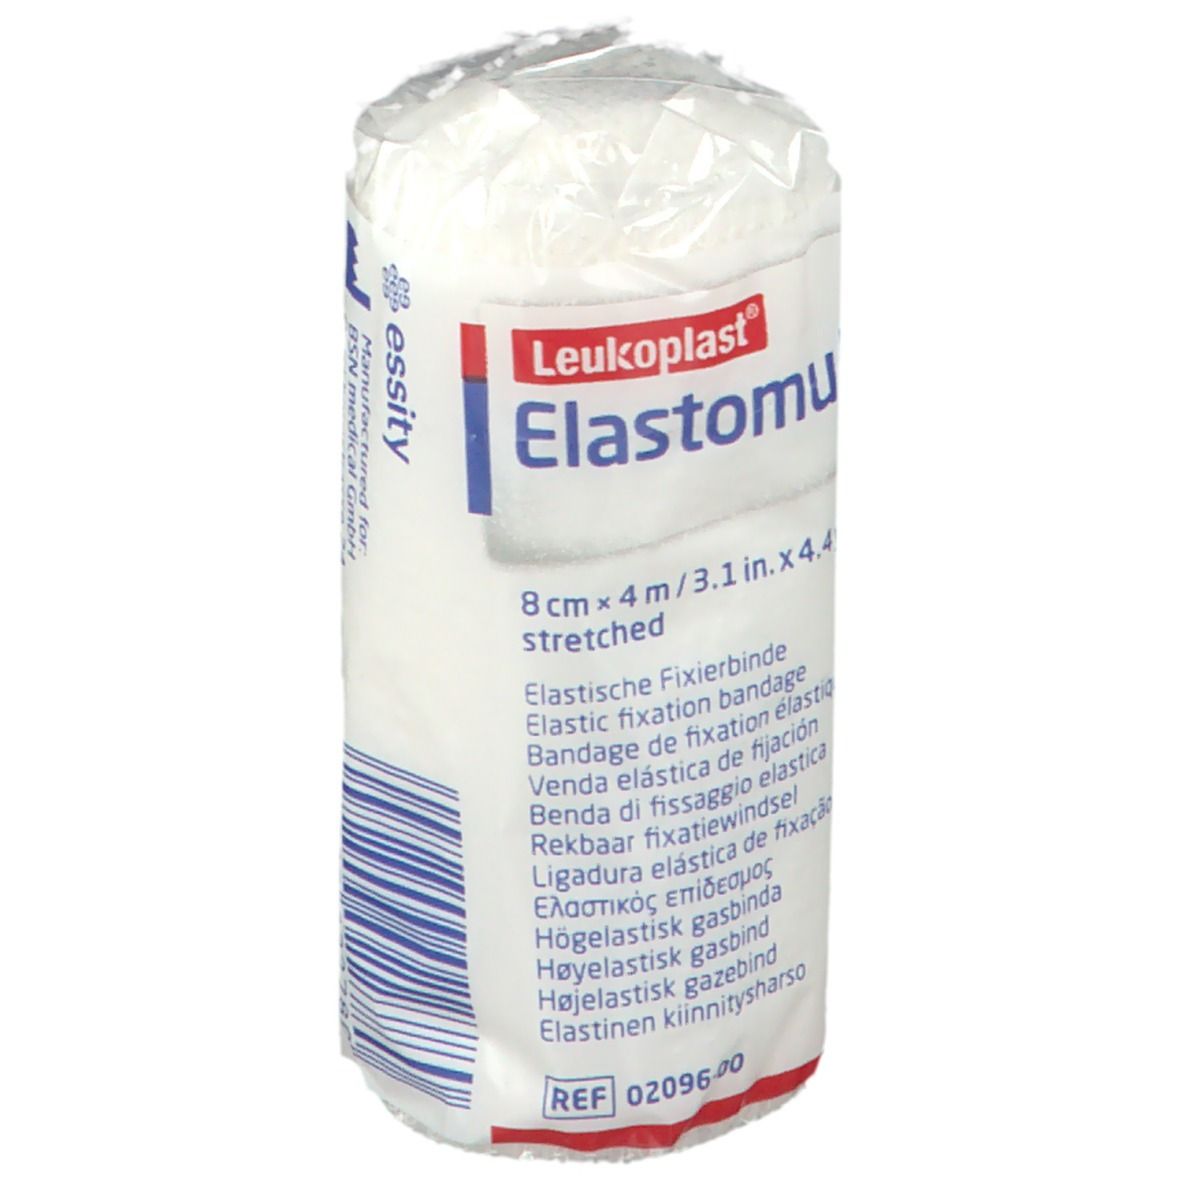 Elastomull® elastische Fixierbinde 4 m x 8 cm in Polypropylen